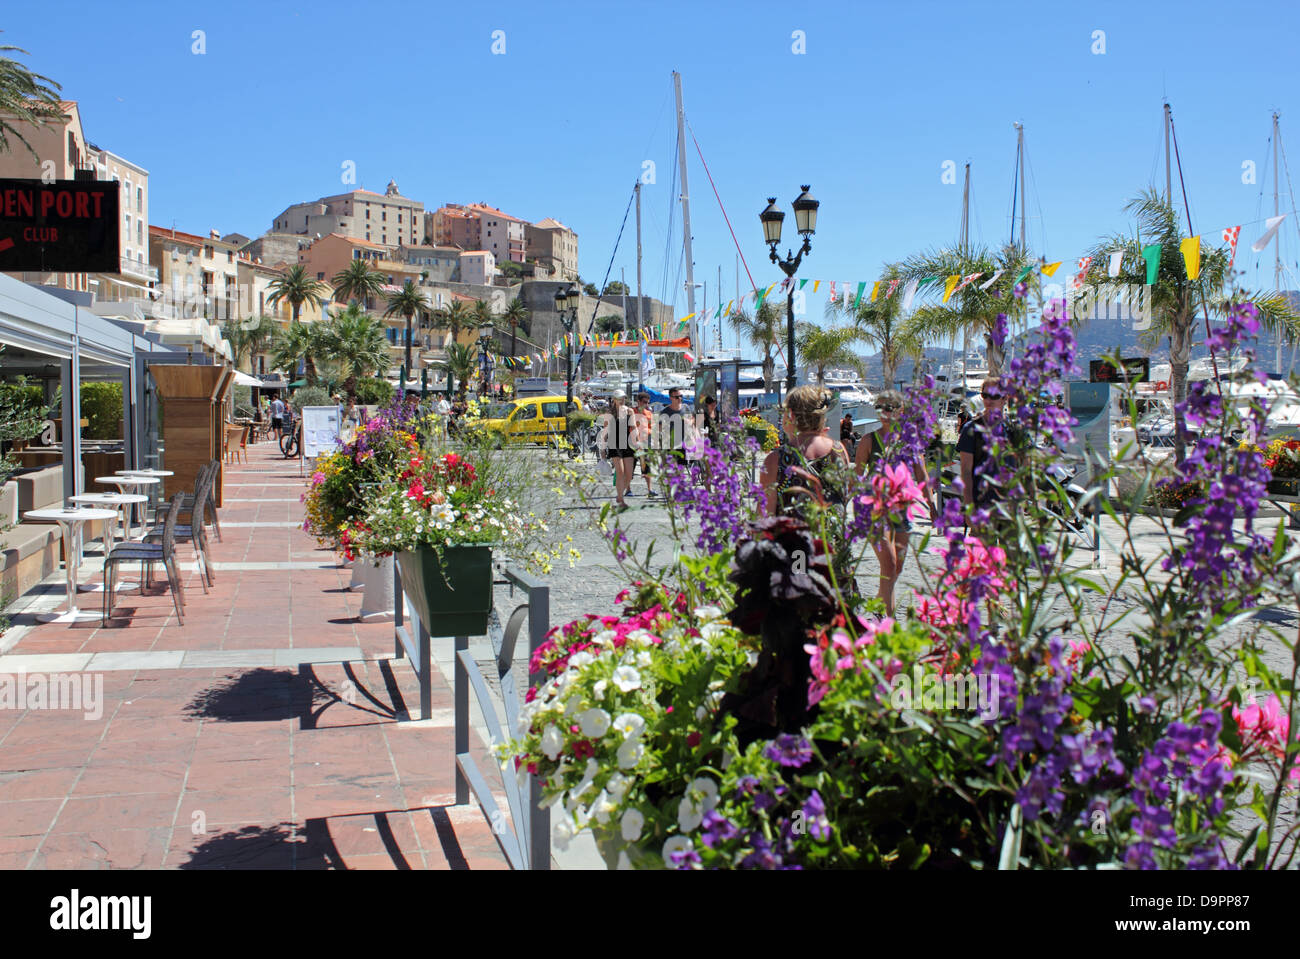 Le port de Calvi, Corse, France Banque D'Images